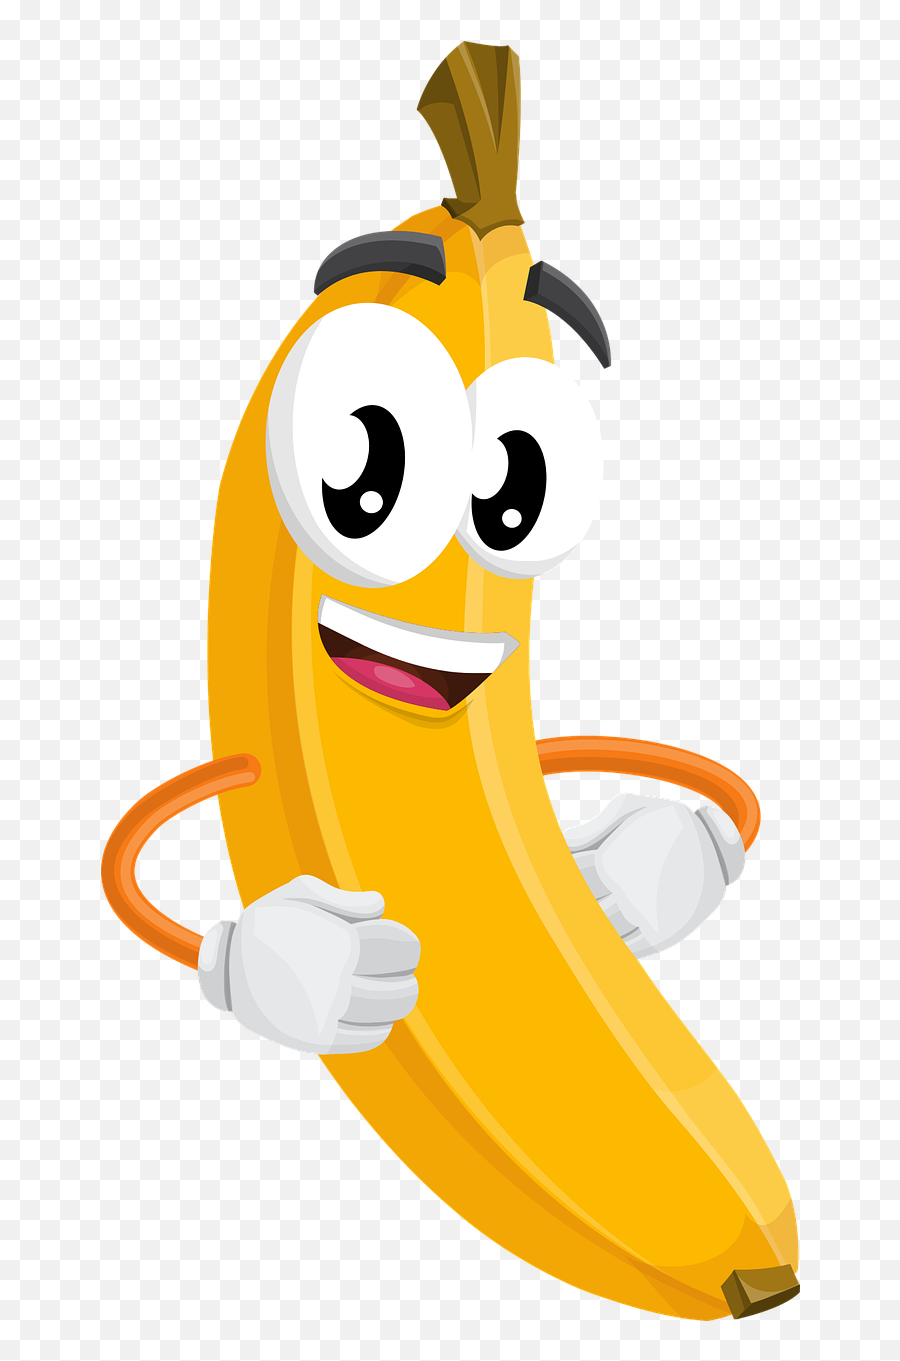 Funny Banana Clipart - Png Download Full Size Clipart Banana Con Ojos Emoji,Banana Clipart